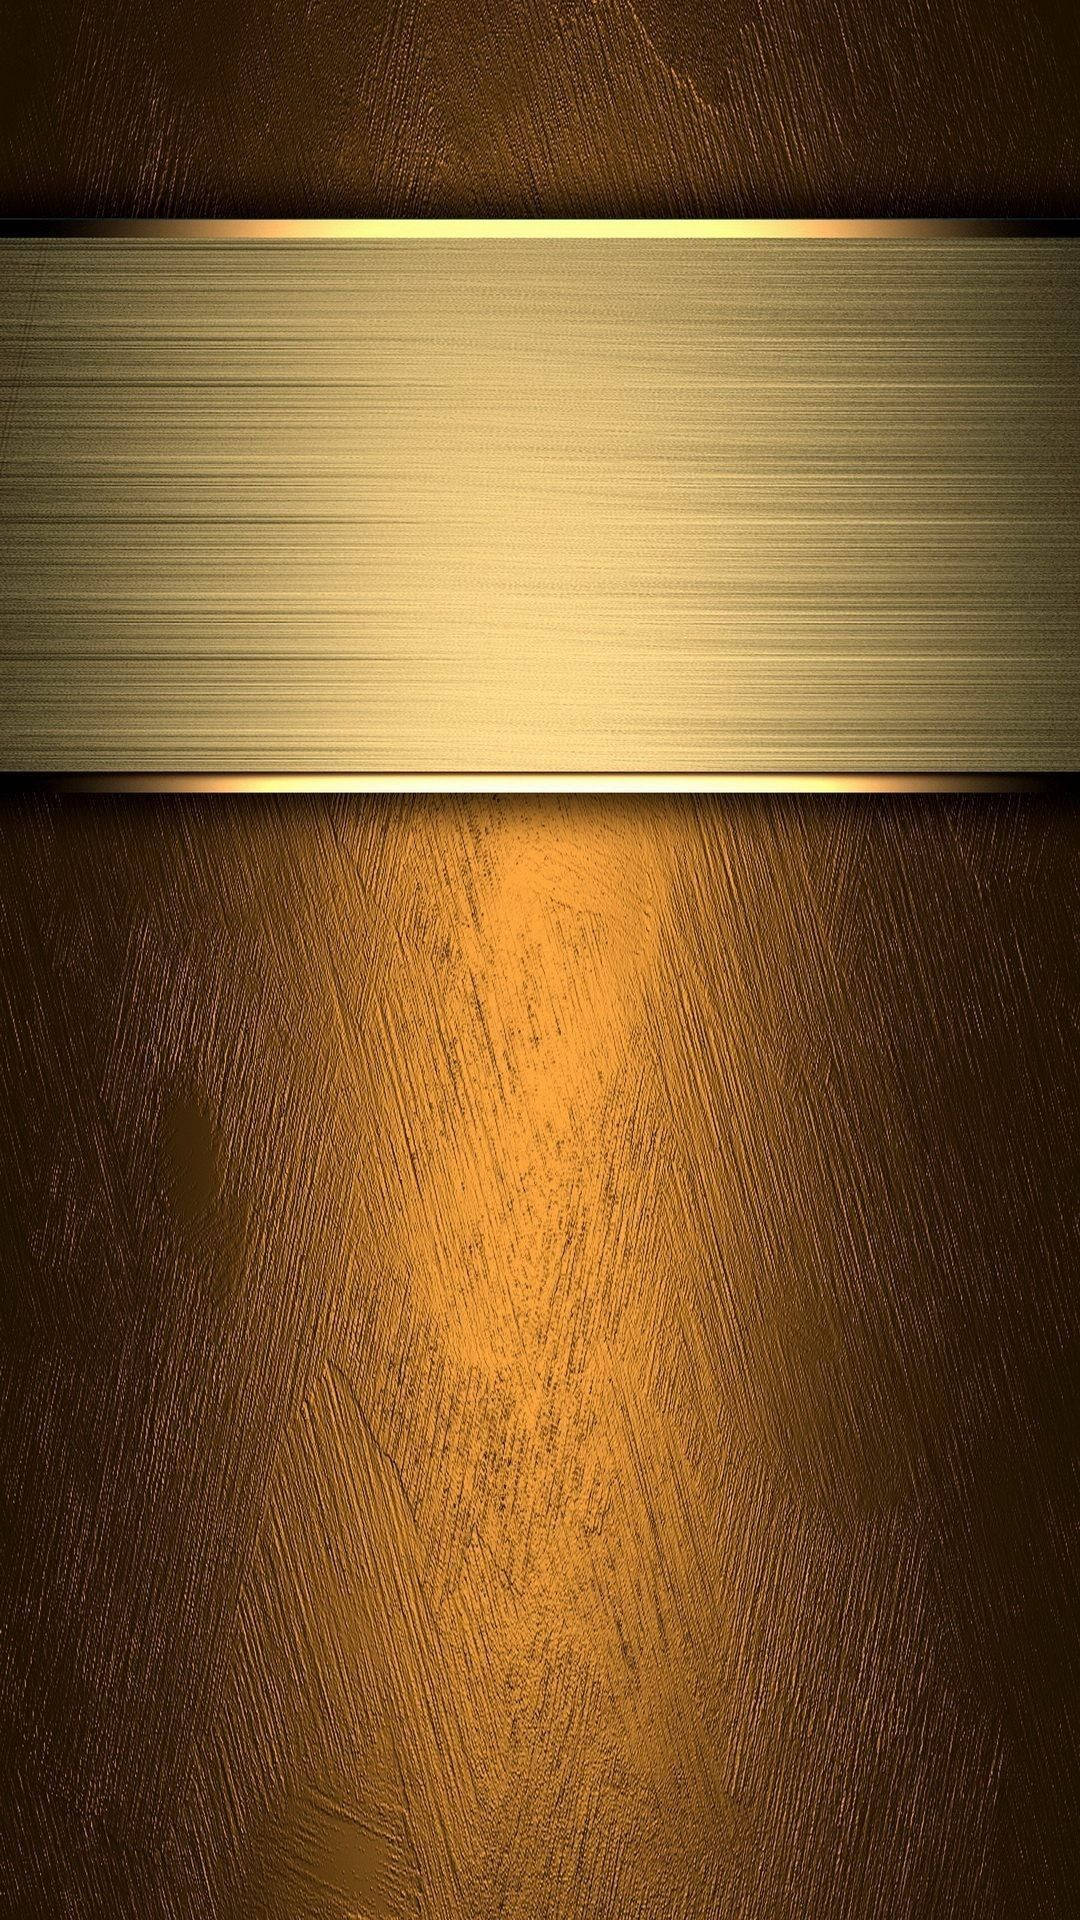 Iphone 6s Guld 1080 X 1920 Wallpaper